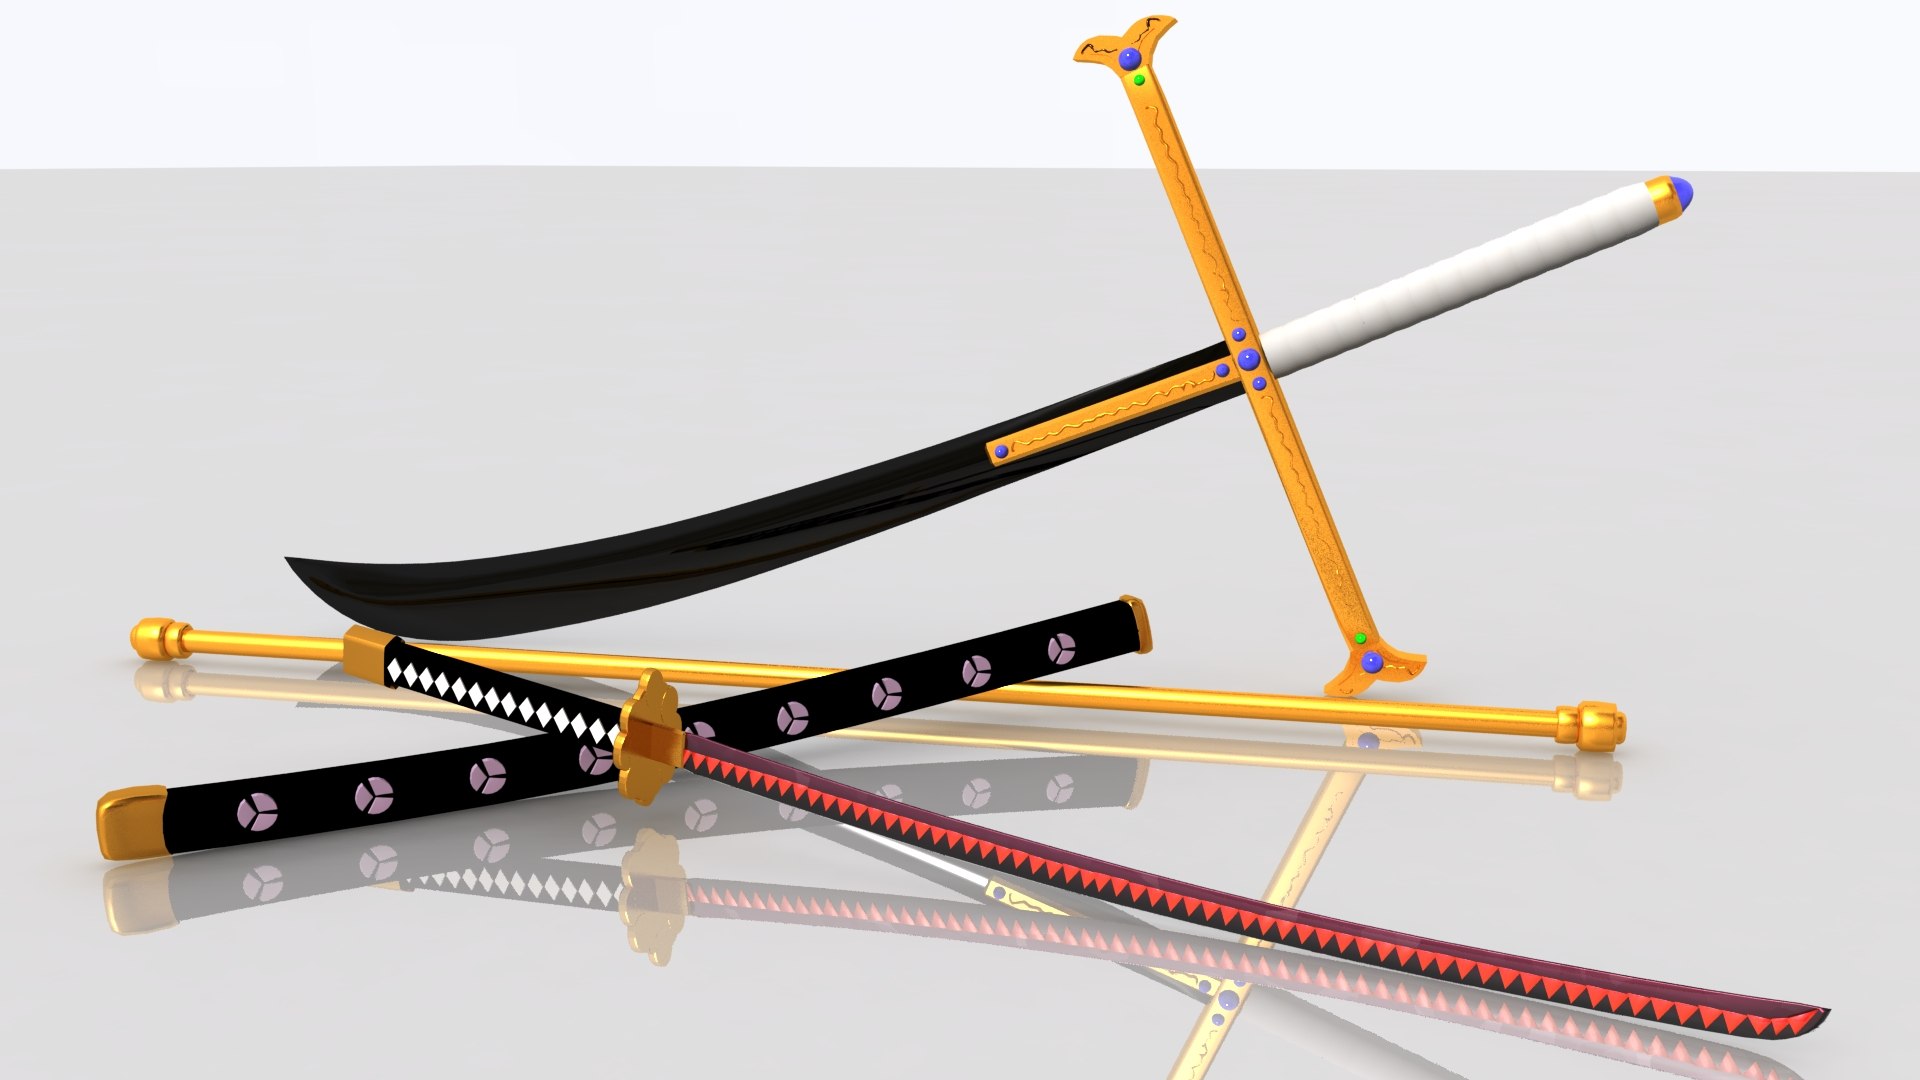 Kokuto yoru swords mihawk 3D model - TurboSquid 1191014